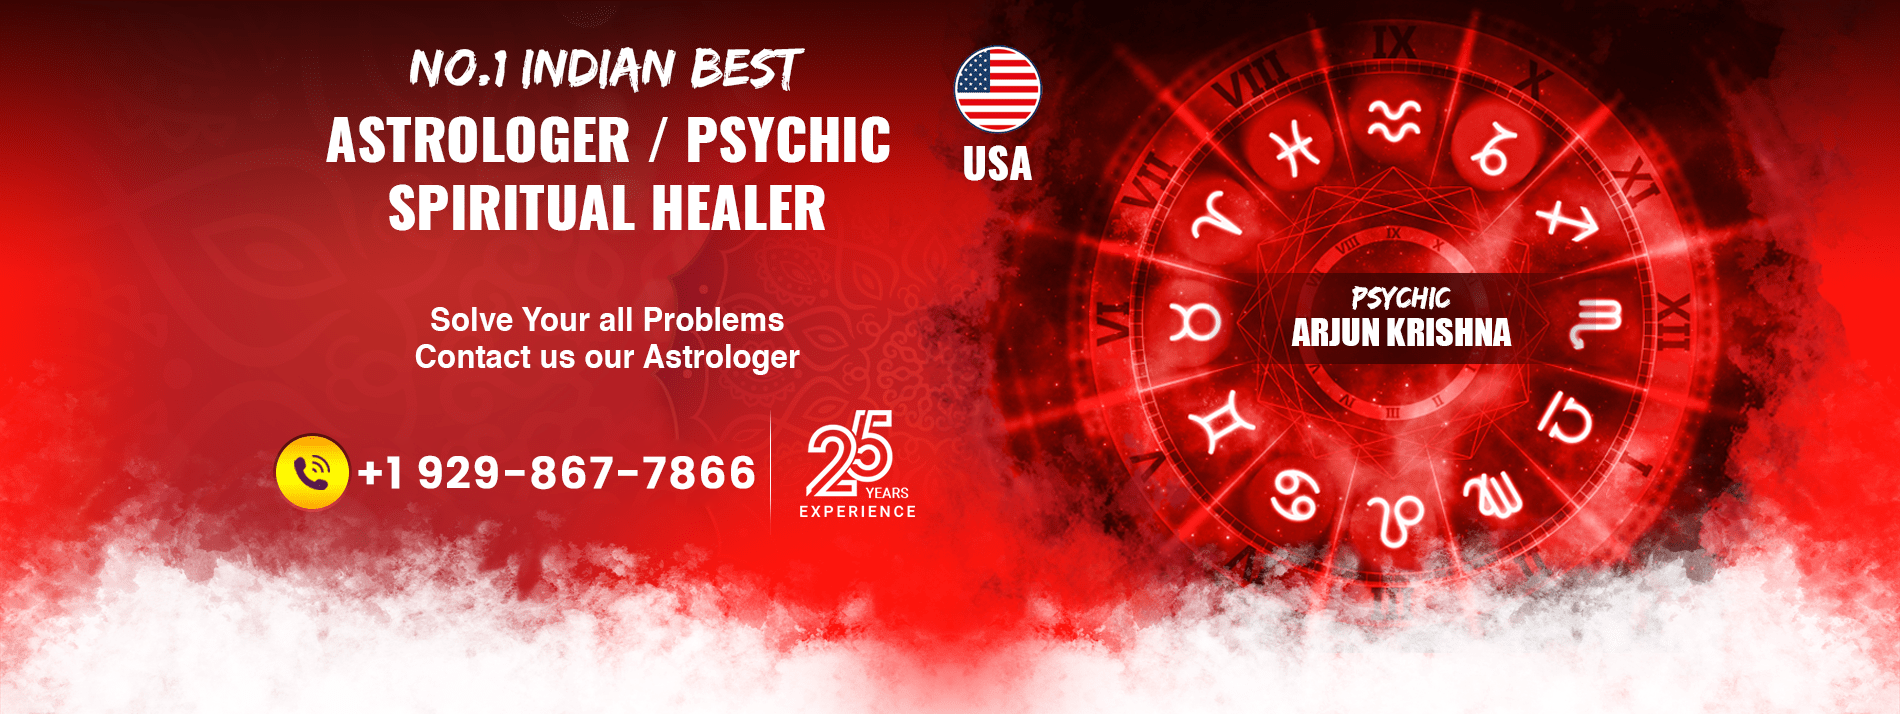 Indian Astrologer
